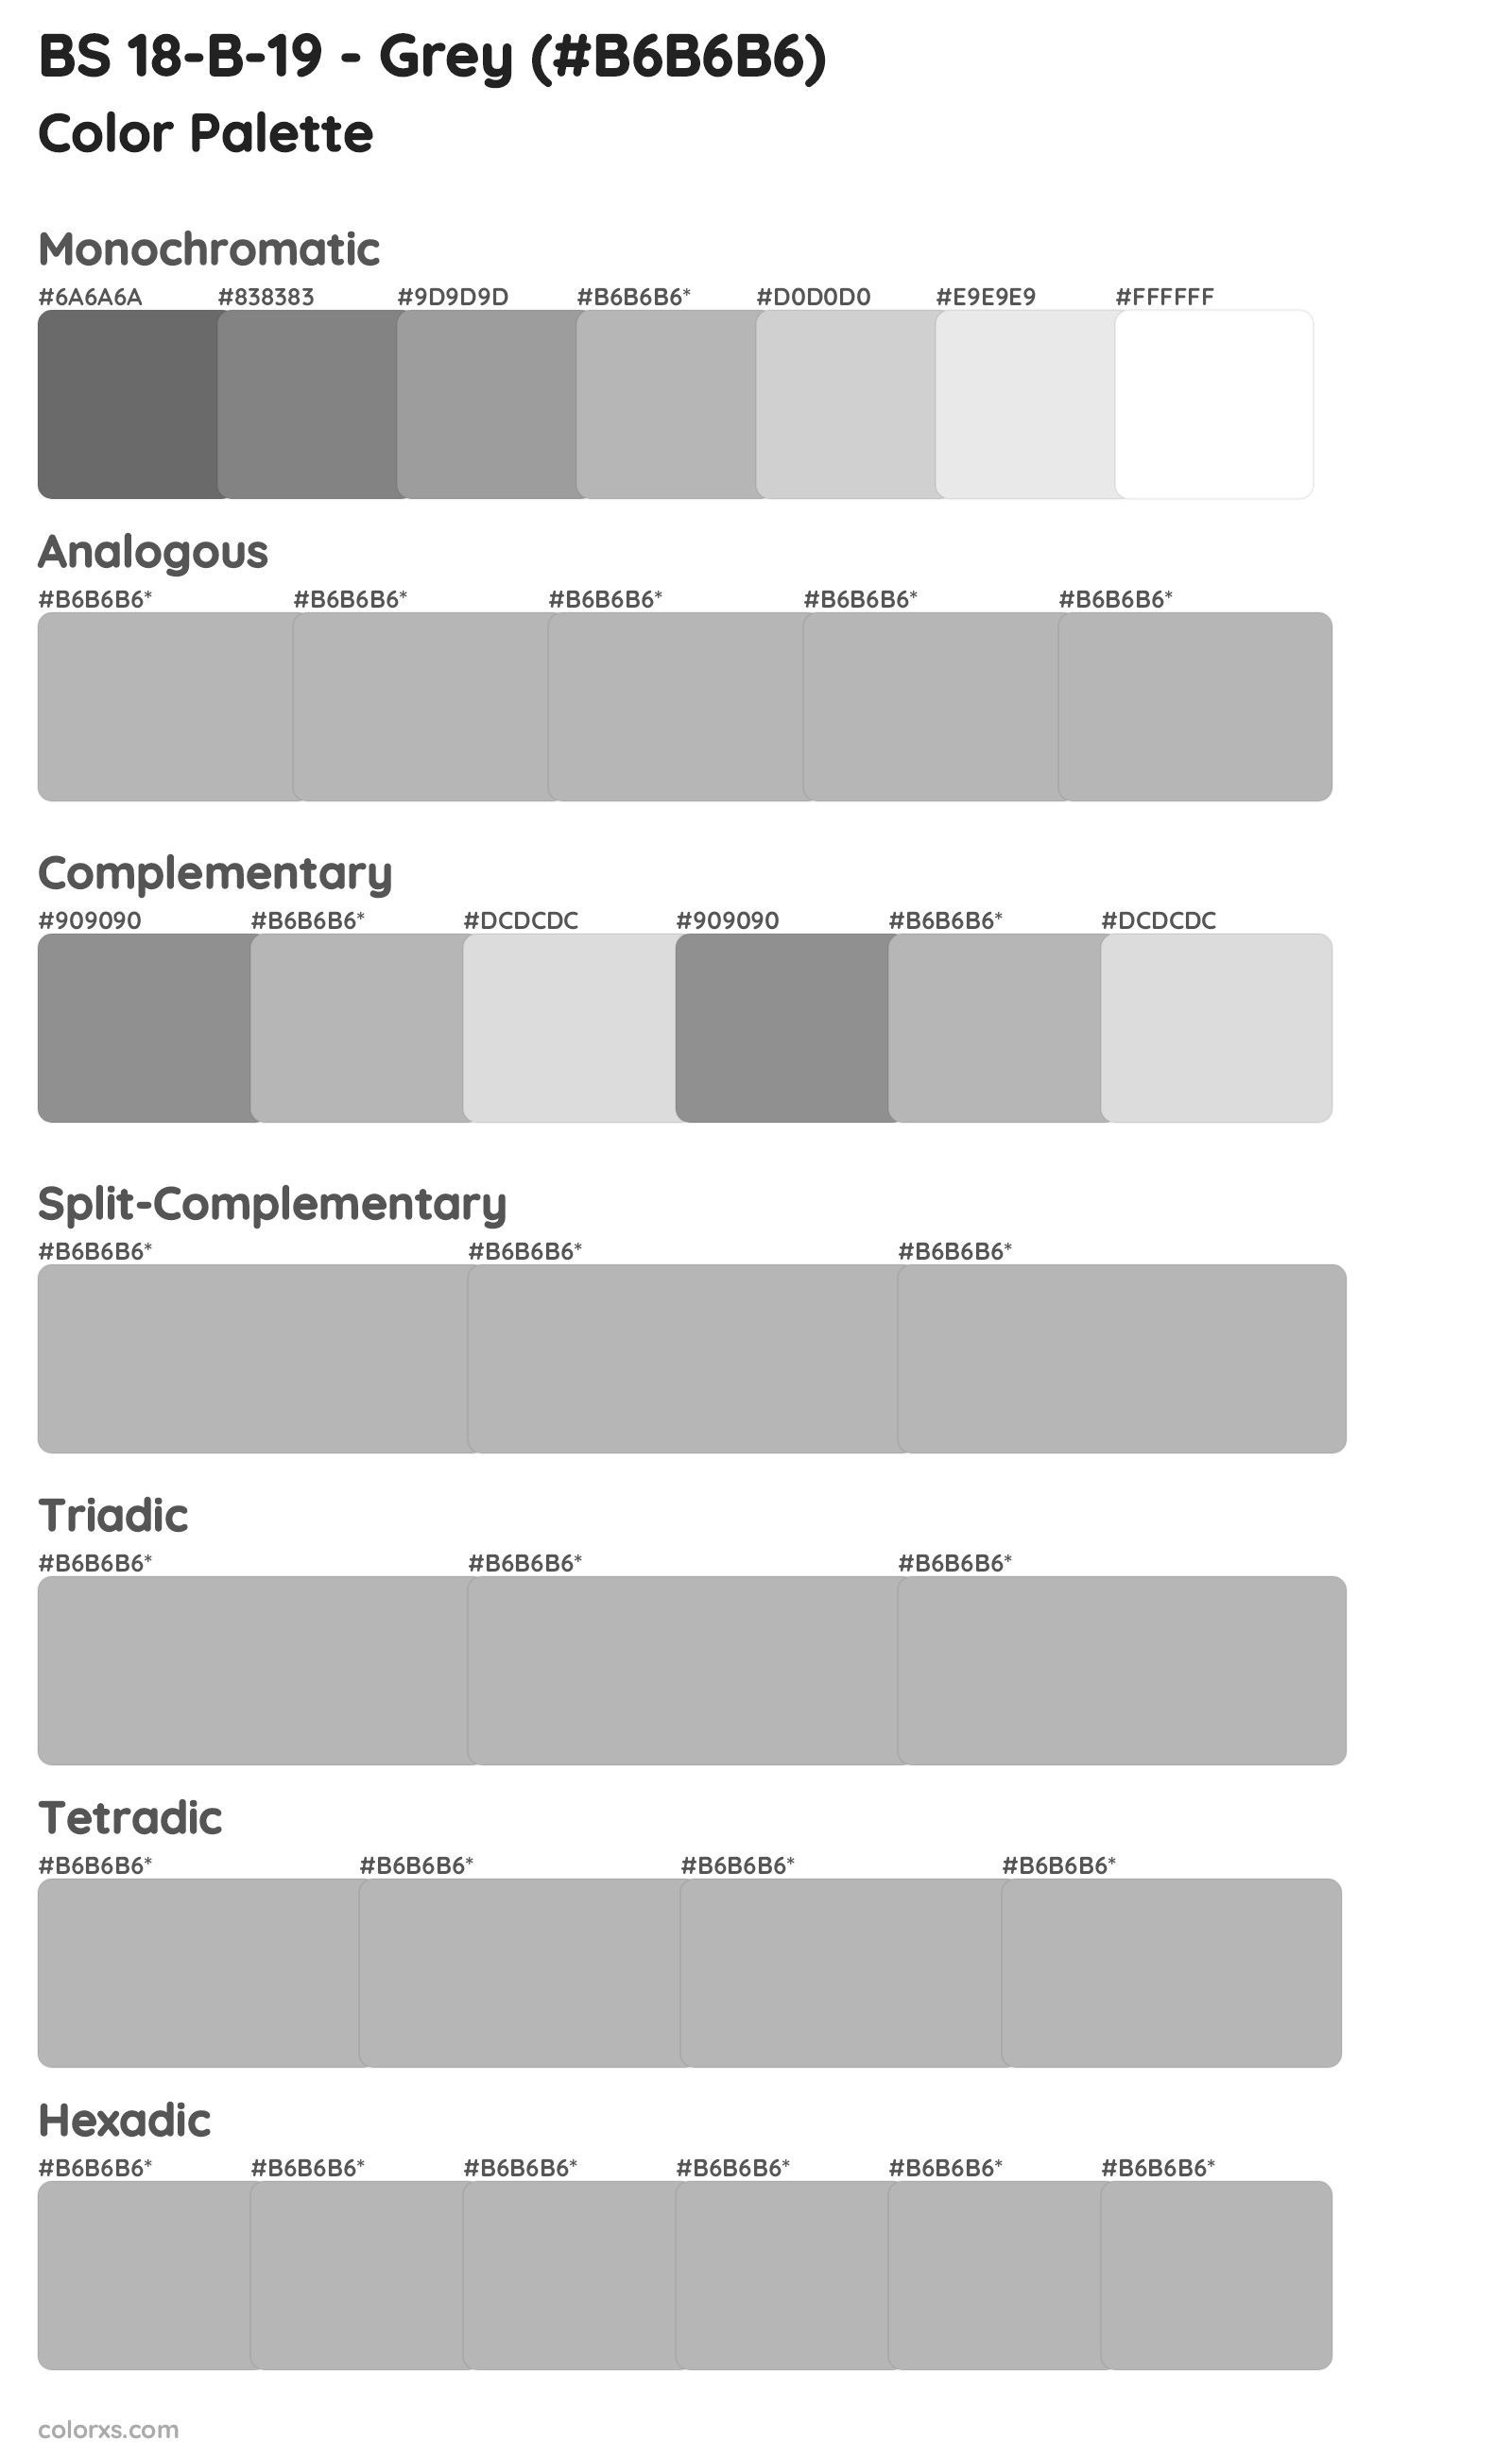 BS 18-B-19 - Grey Color Scheme Palettes